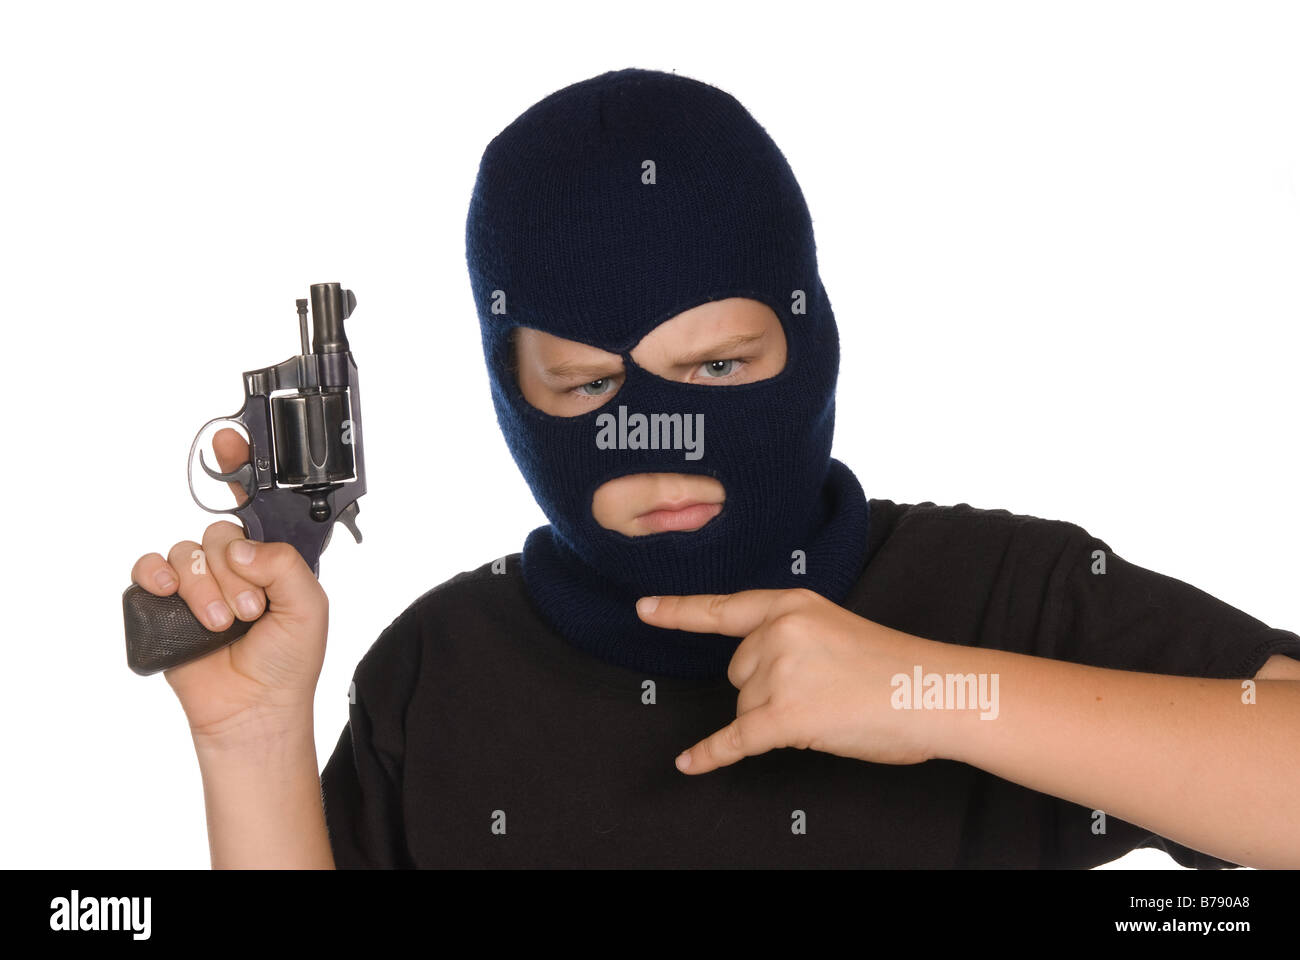 Ein kleiner Junge blinkt seine Bande Schild und Waffe, um seine hundertprozentige Verpflichtung zu Kriminalität und schlechte Wege zeigen Stockfoto